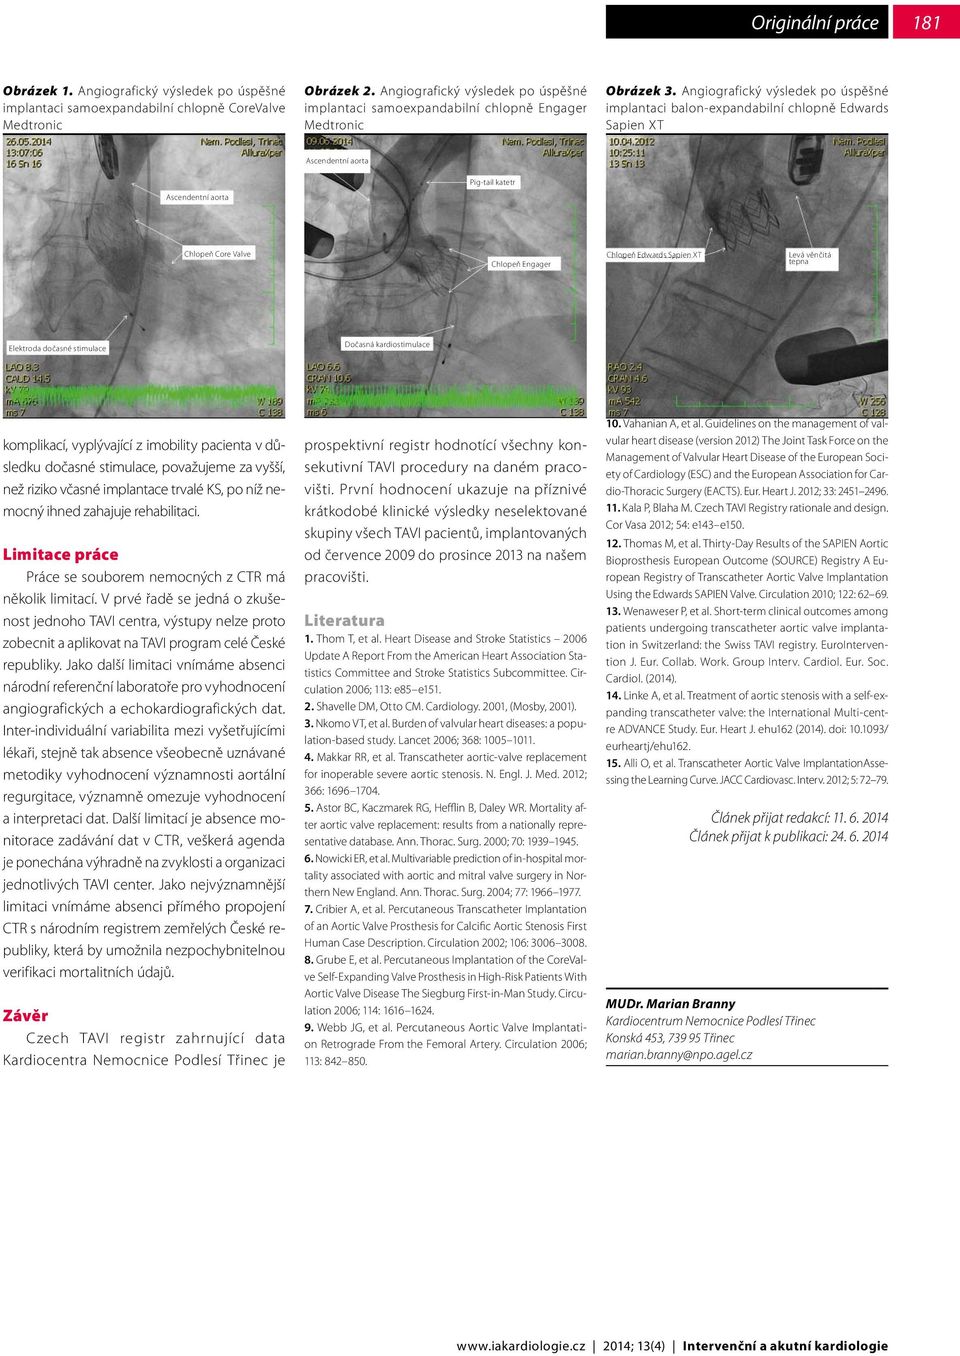 Angiografický výsledek po úspěšné implantaci balon-expandabilní chlopně Edwards Sapien XT Ascendentní aorta Ascendentní aorta Pig-tail katetr Chlopeň Core Valve Chlopeň Engager Chlopeň Edwards Sapien